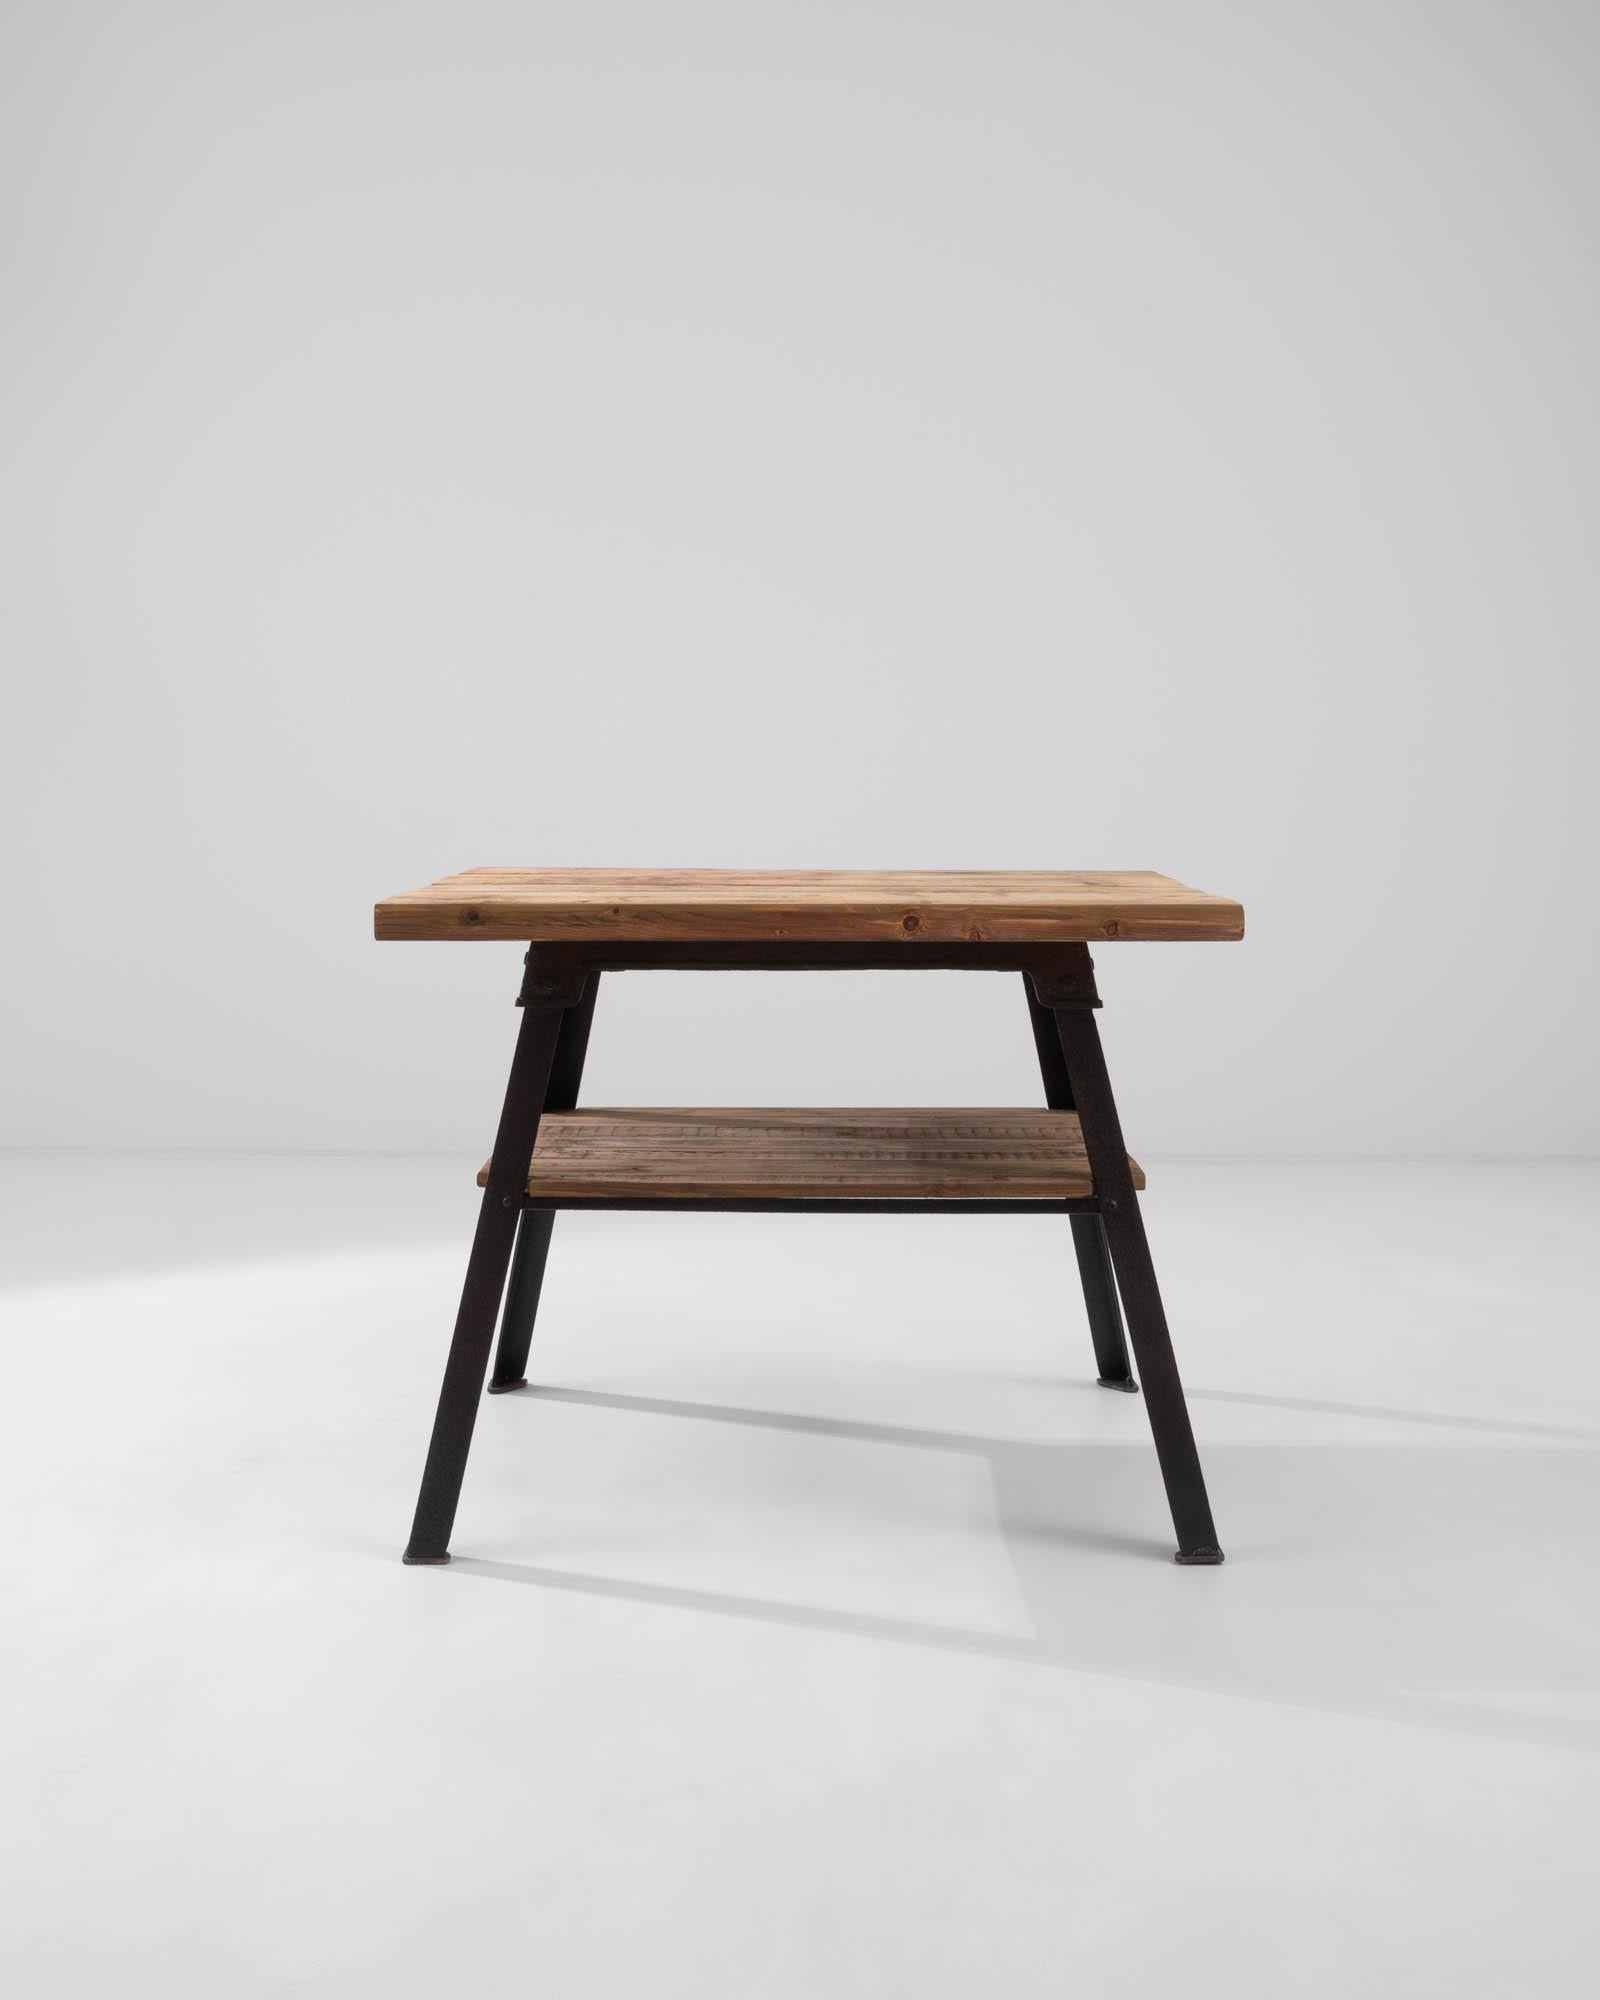 Dieser stilvolle und zugleich robuste Industrial-Tisch ist ein überzeugender Vintage-Fund. Die im 20. Jahrhundert in Frankreich gebaute Tischplatte aus natürlichen Holzbrettern ruht auf einem gusseisernen Gestell. Die kühnen Winkel der Beine bilden